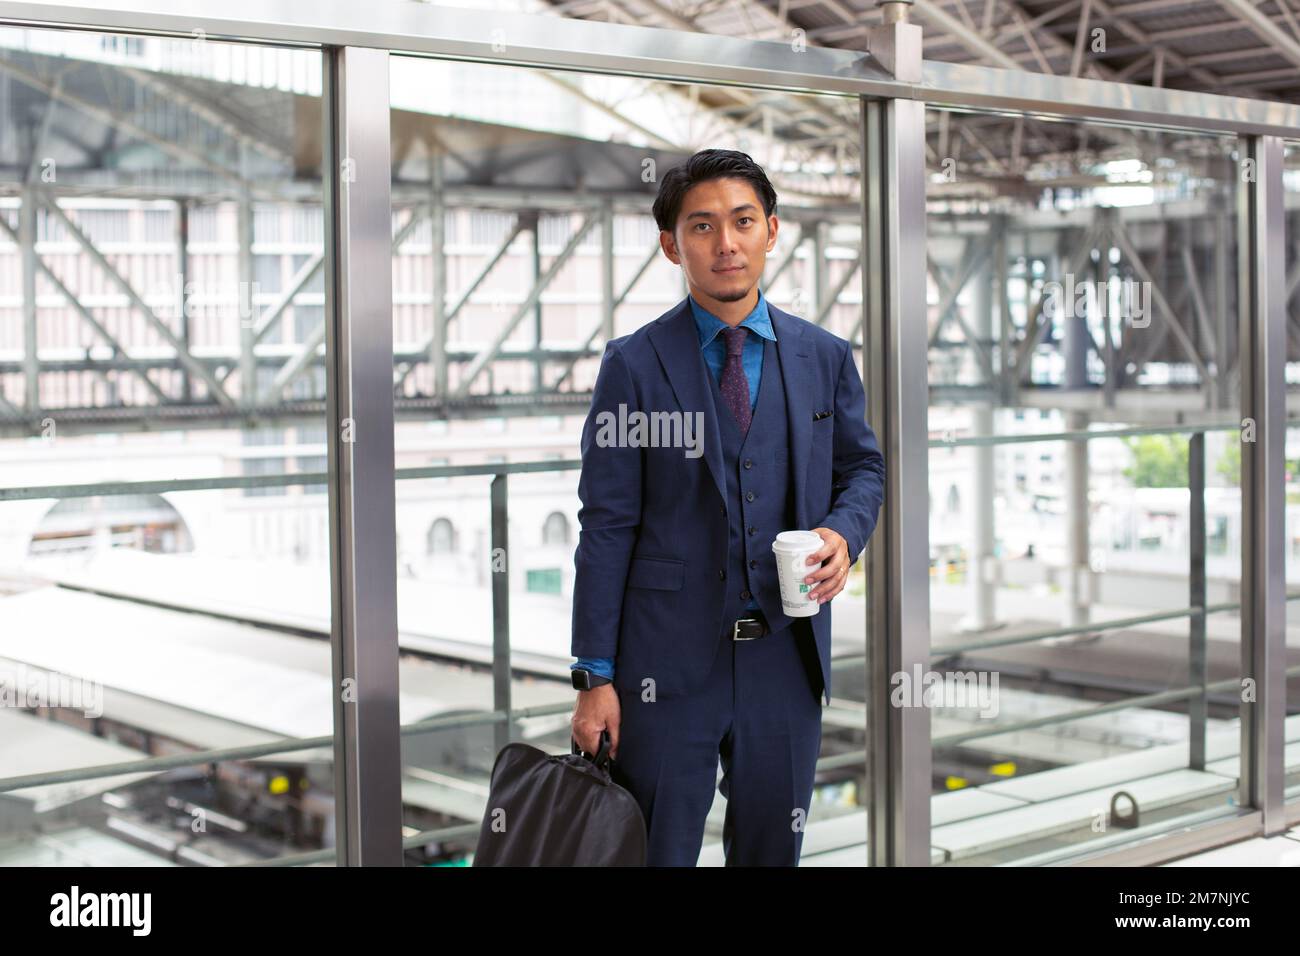 Ein junger Geschäftsmann in einem blauen Anzug, der in der Innenstadt unterwegs ist, mit einer Aktentasche und einer Tasse Kaffee. Stockfoto